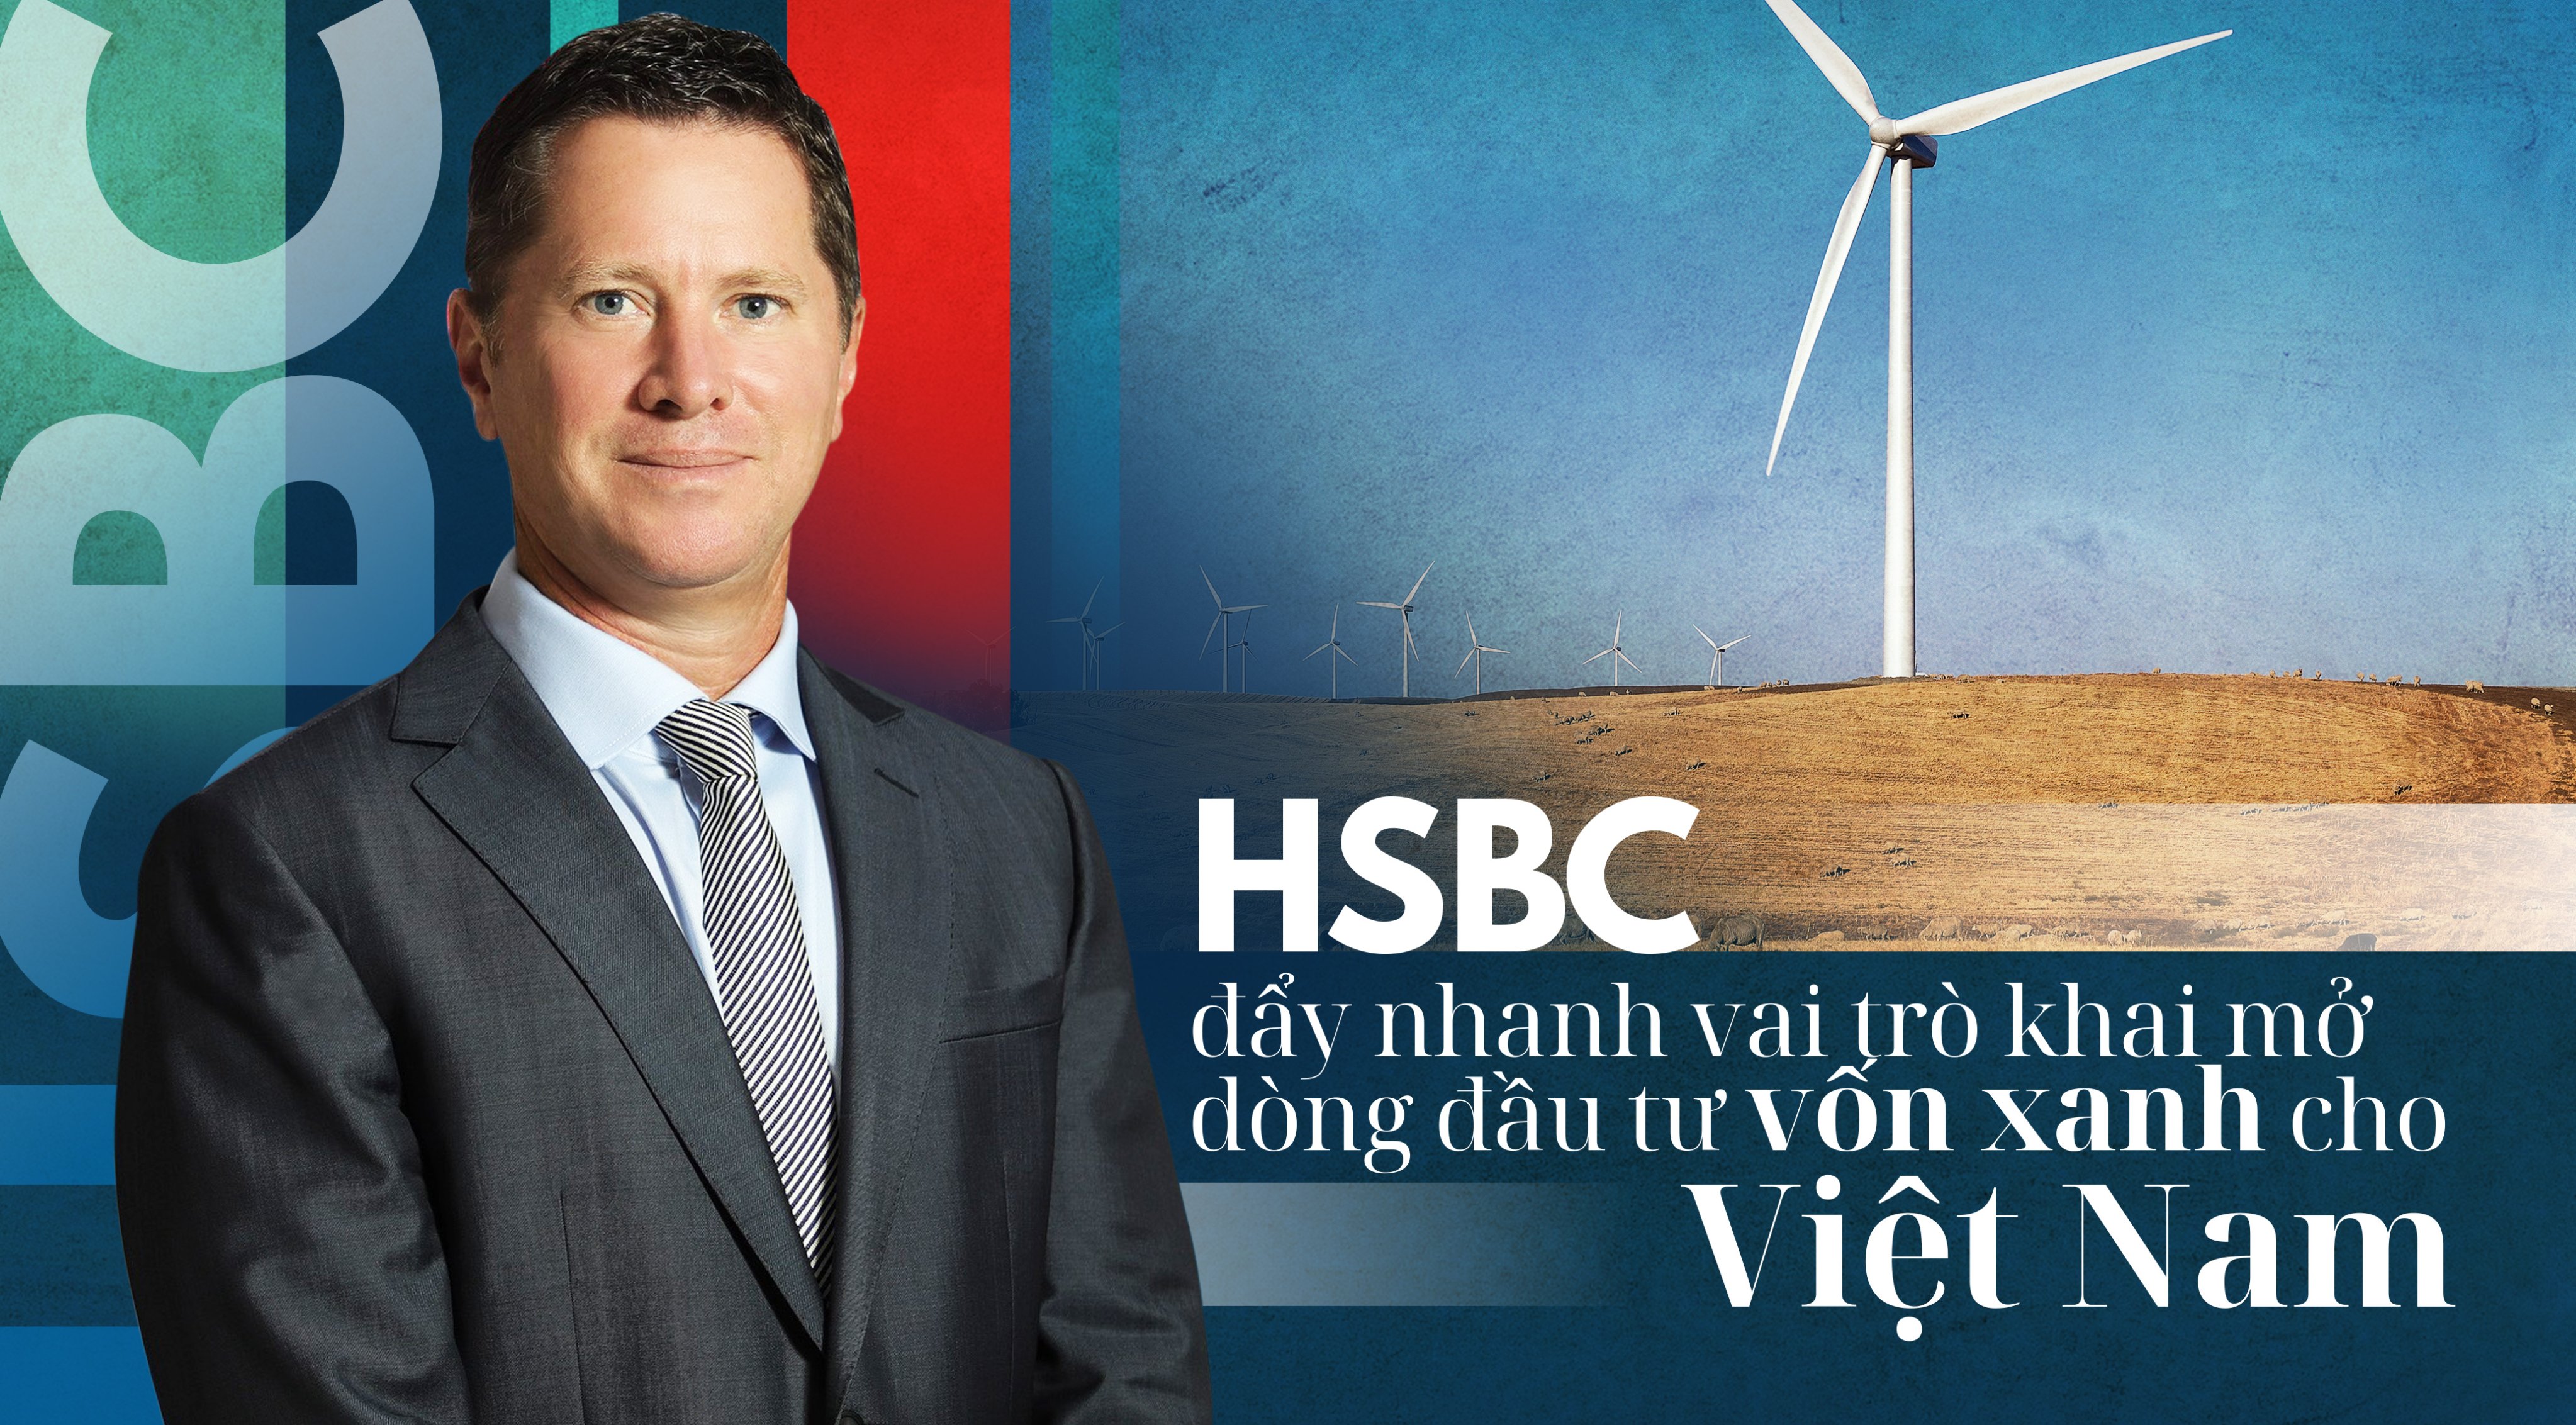 HSBC đẩy nhanh vai trò khai mở dòng đầu tư xanh hóa cho Việt Nam